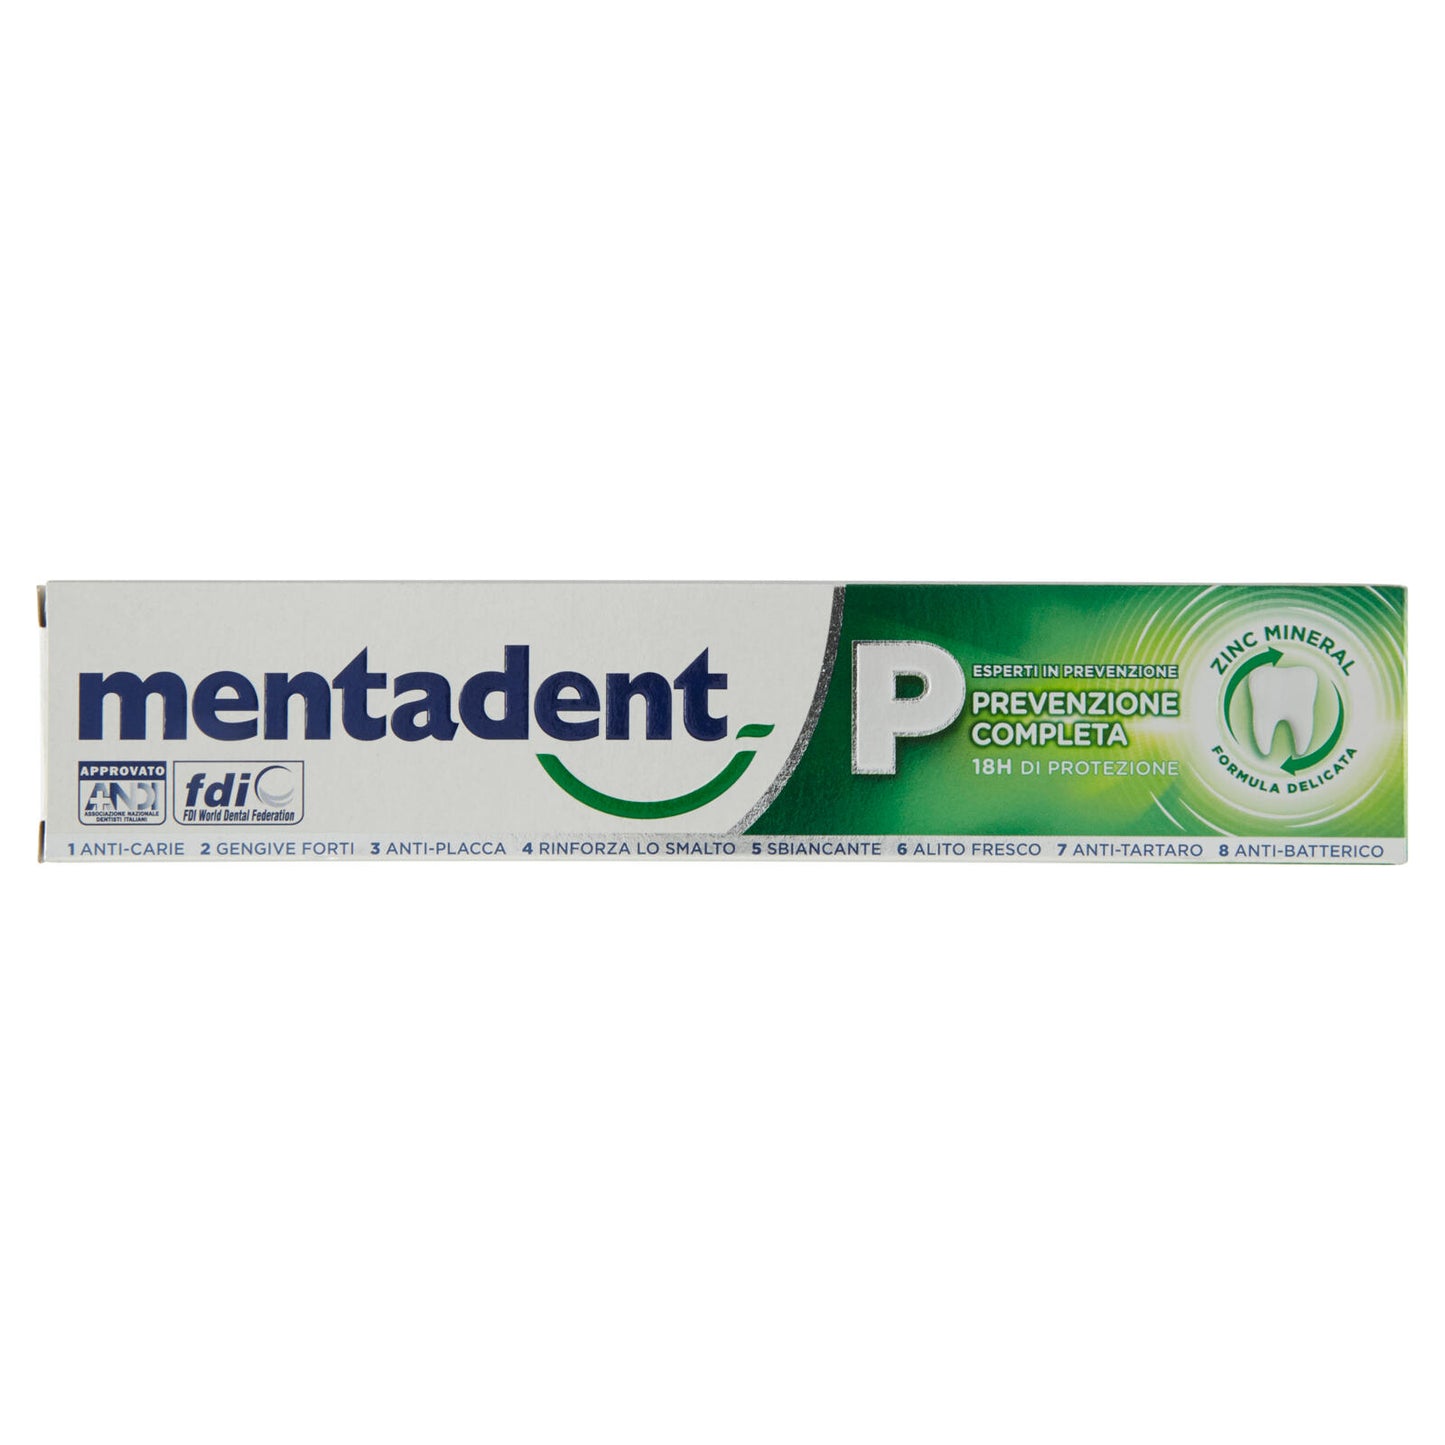 Mentadent P Prevenzione Completa 75 ml